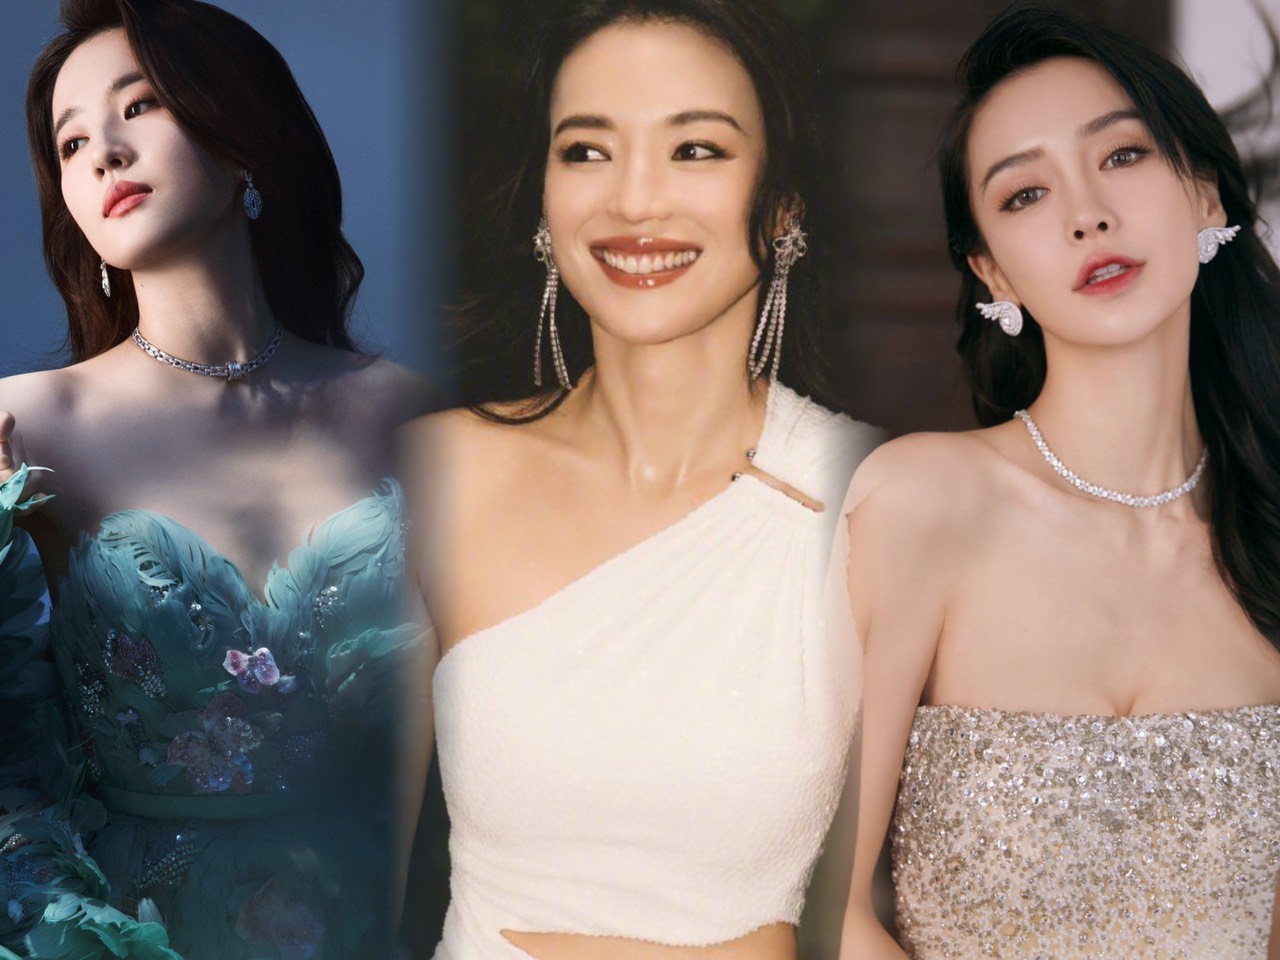 Tranh cãi BXH 10 mỹ nhân showbiz đẹp nhất Trung Quốc: Địch Lệ Nhiệt Ba, Phạm Băng Băng đồng loạt vắng mặt - Ảnh 1.